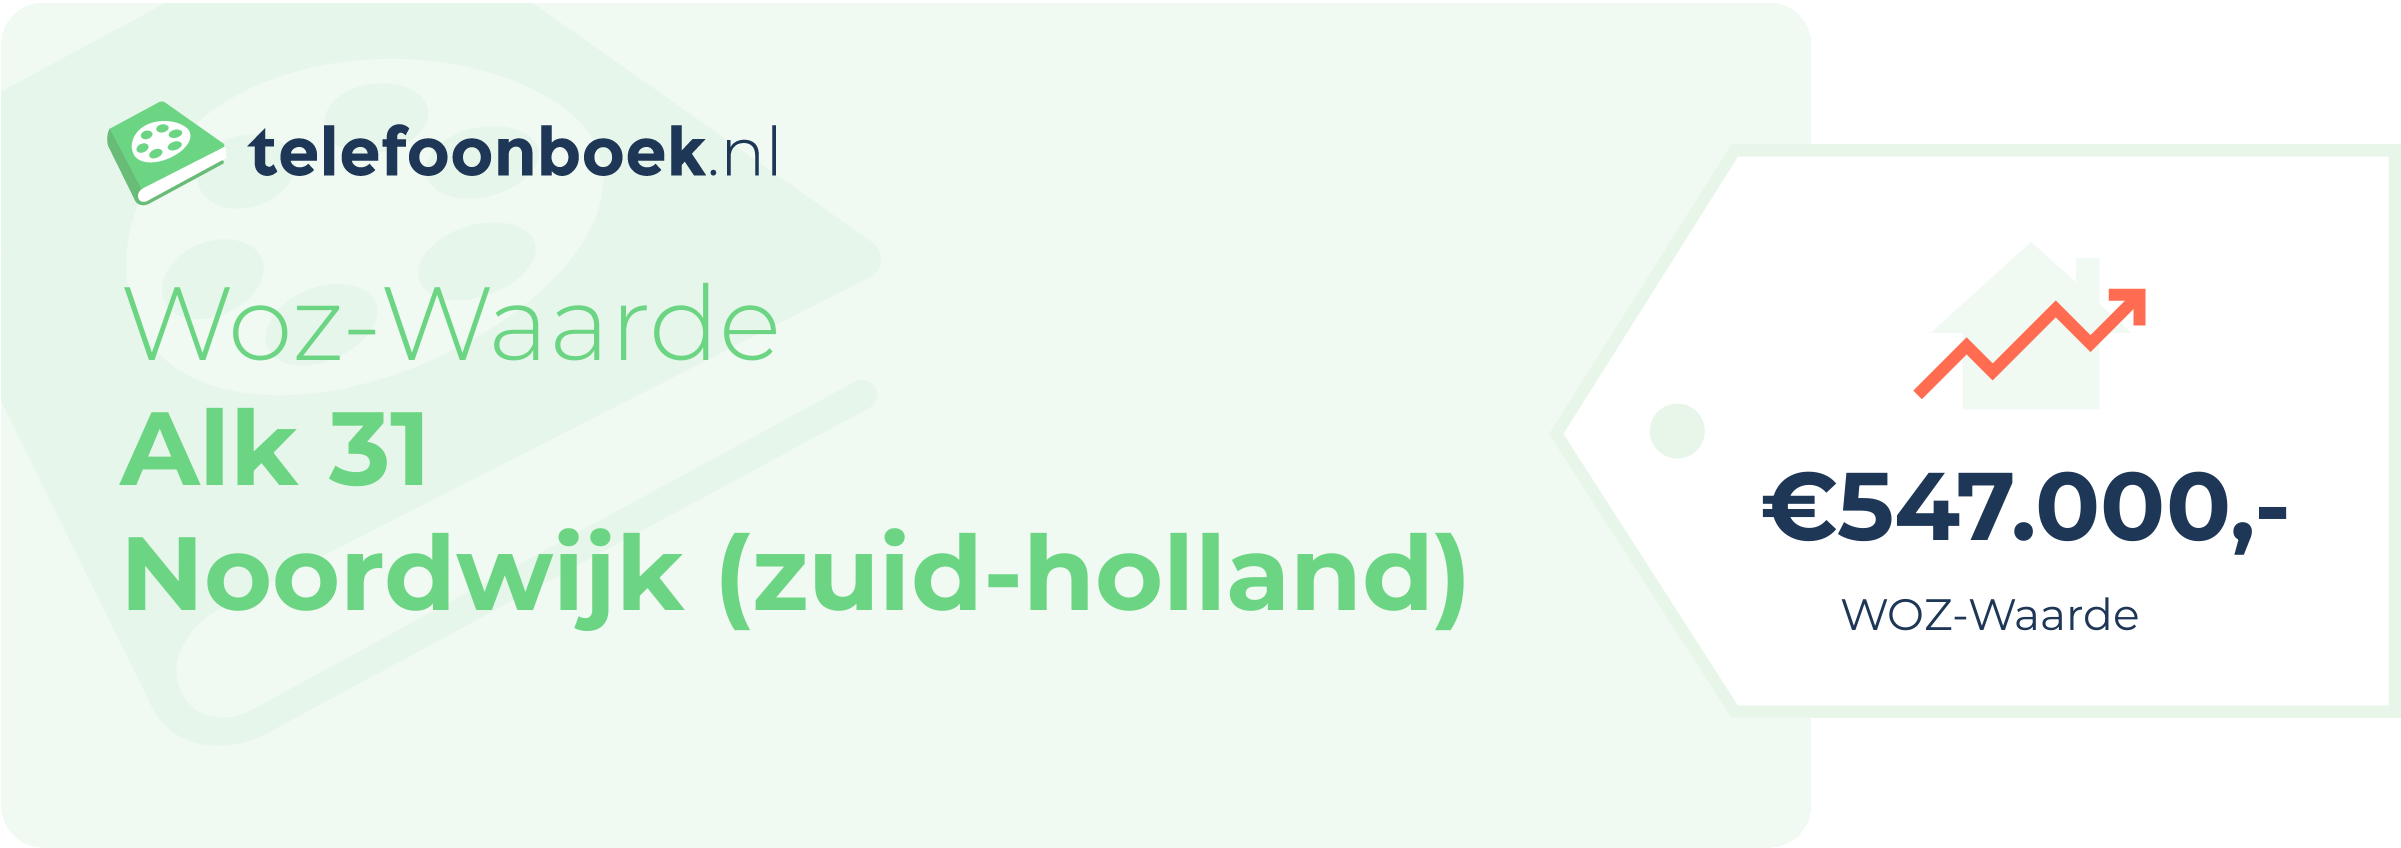 WOZ-waarde Alk 31 Noordwijk (Zuid-Holland)